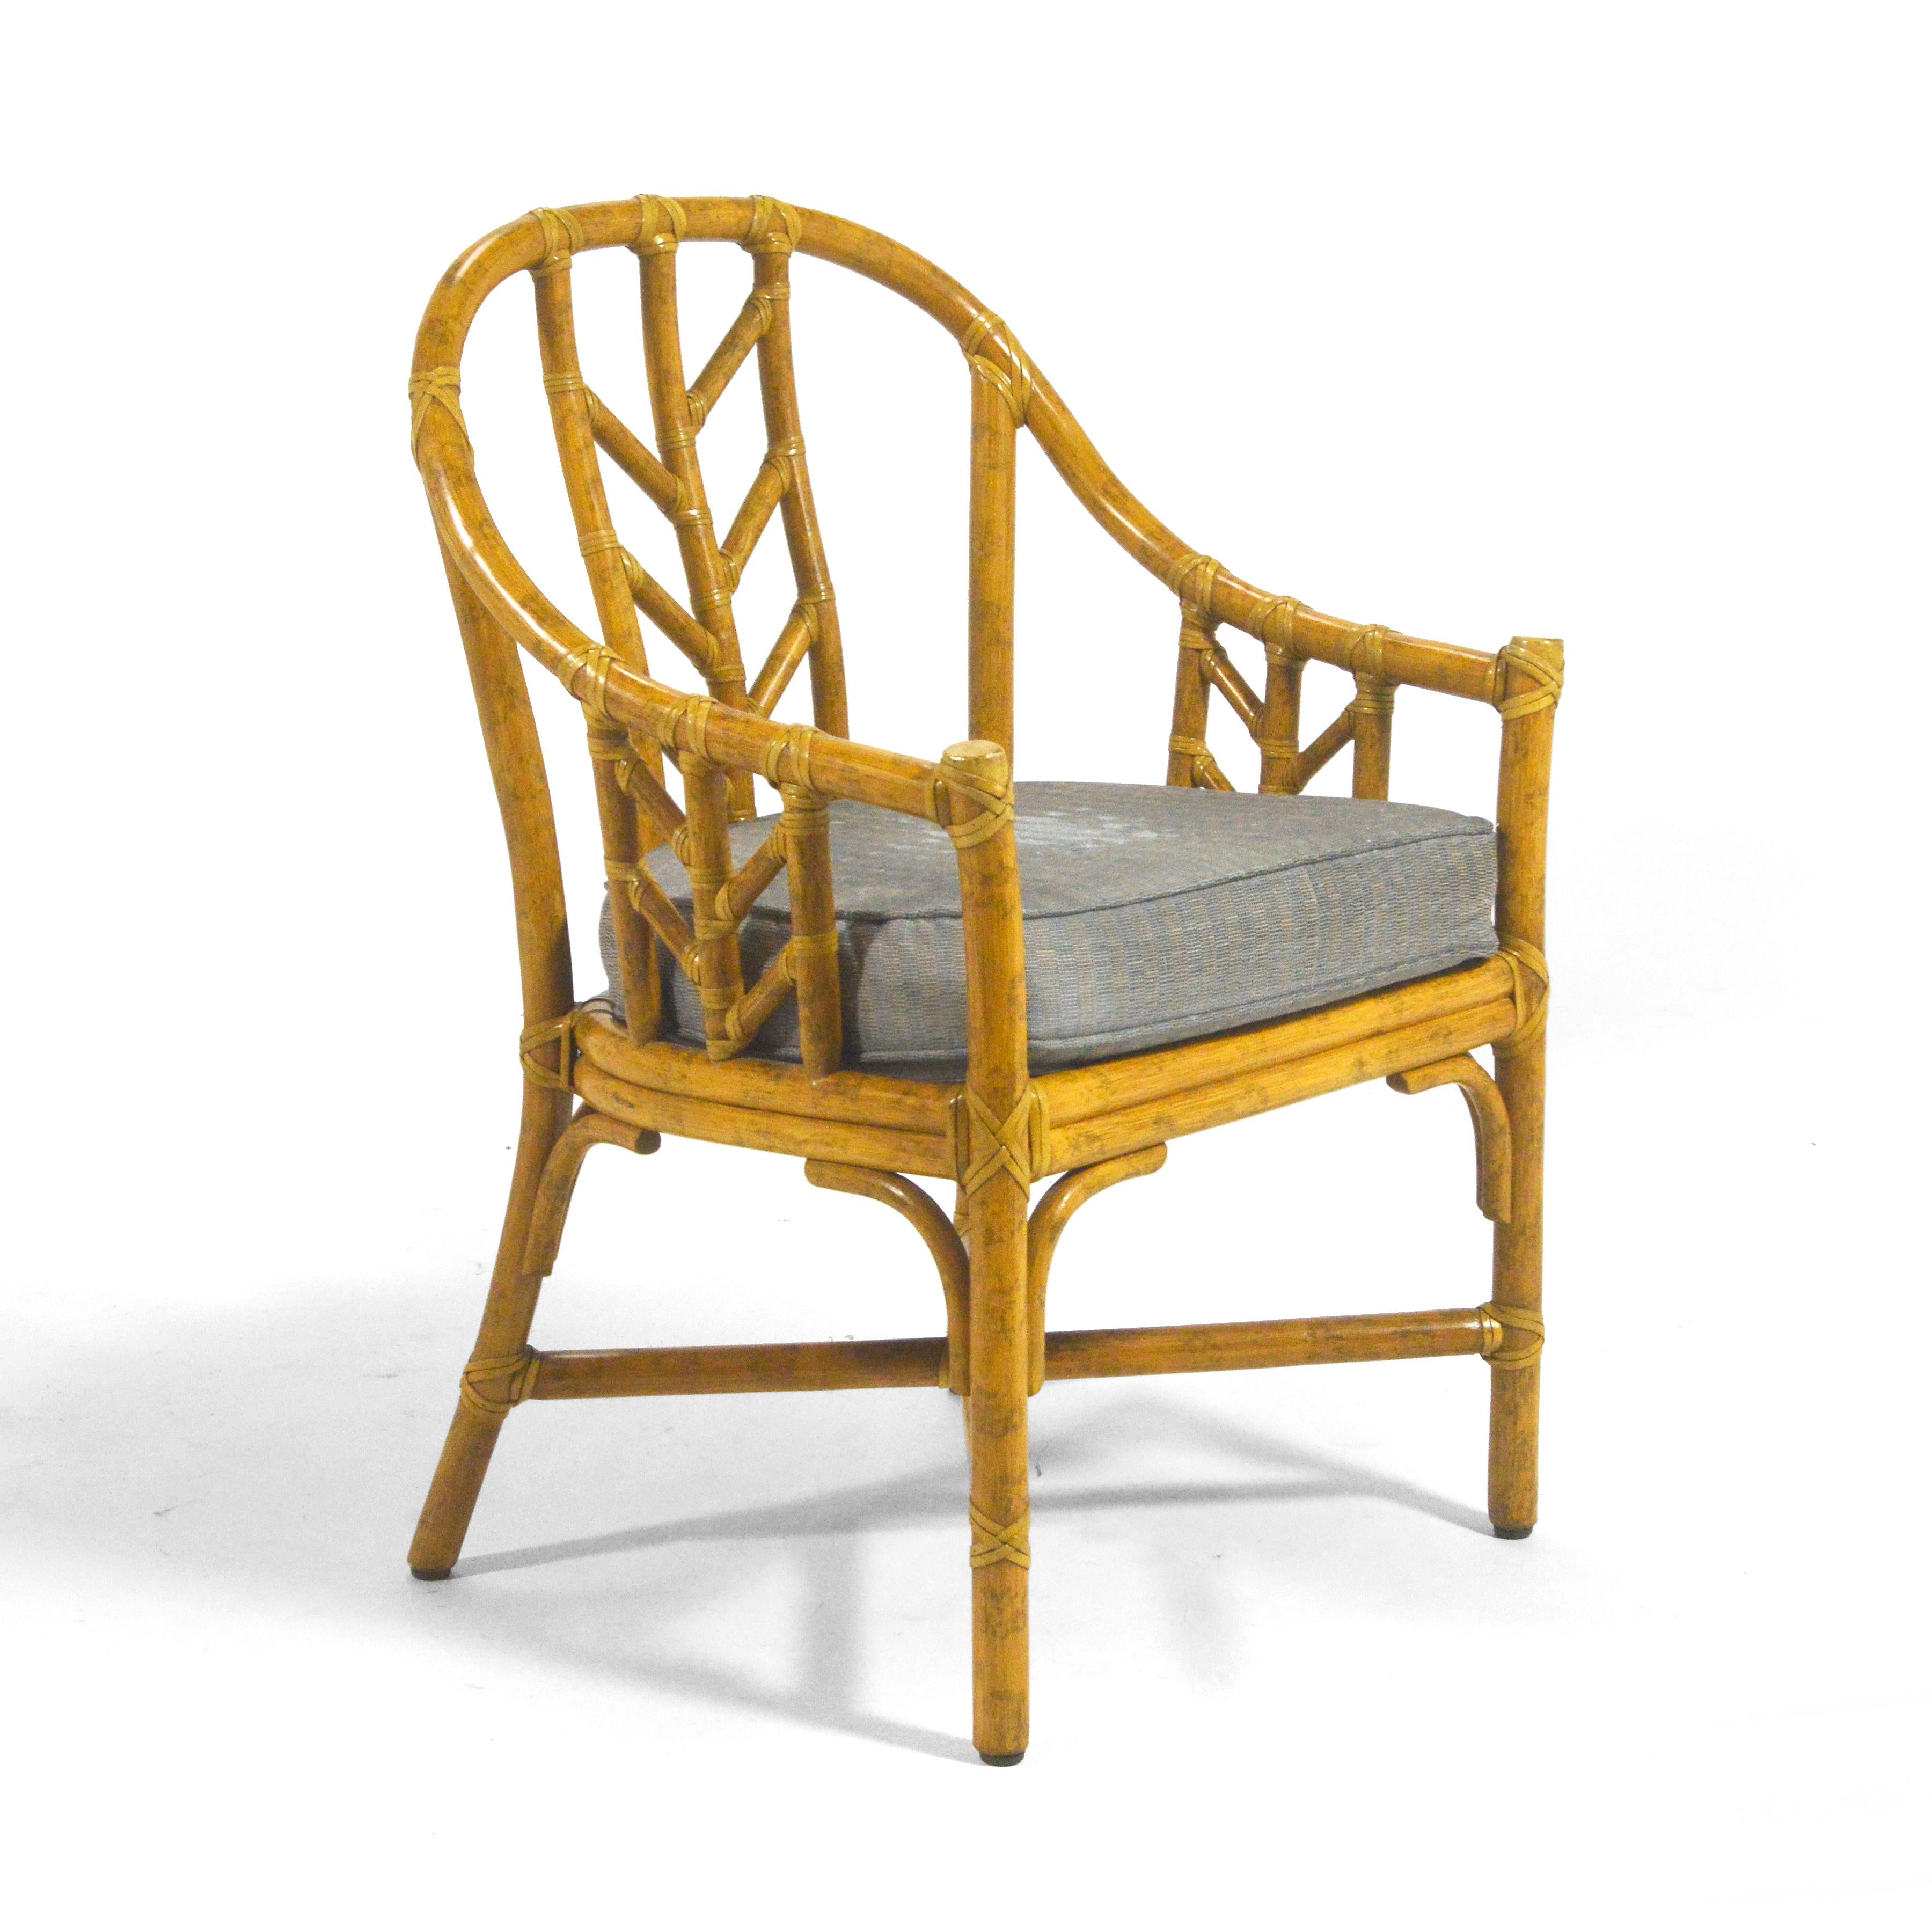 Elinor McGuire a conçu ce modèle de chaise d'appoint M-71 pour McGuire of San Fransisco, la société qu'elle a créée avec son mari John. Les meubles McGuire sont faits pour durer pendant des générations. Non seulement le design moderne organique